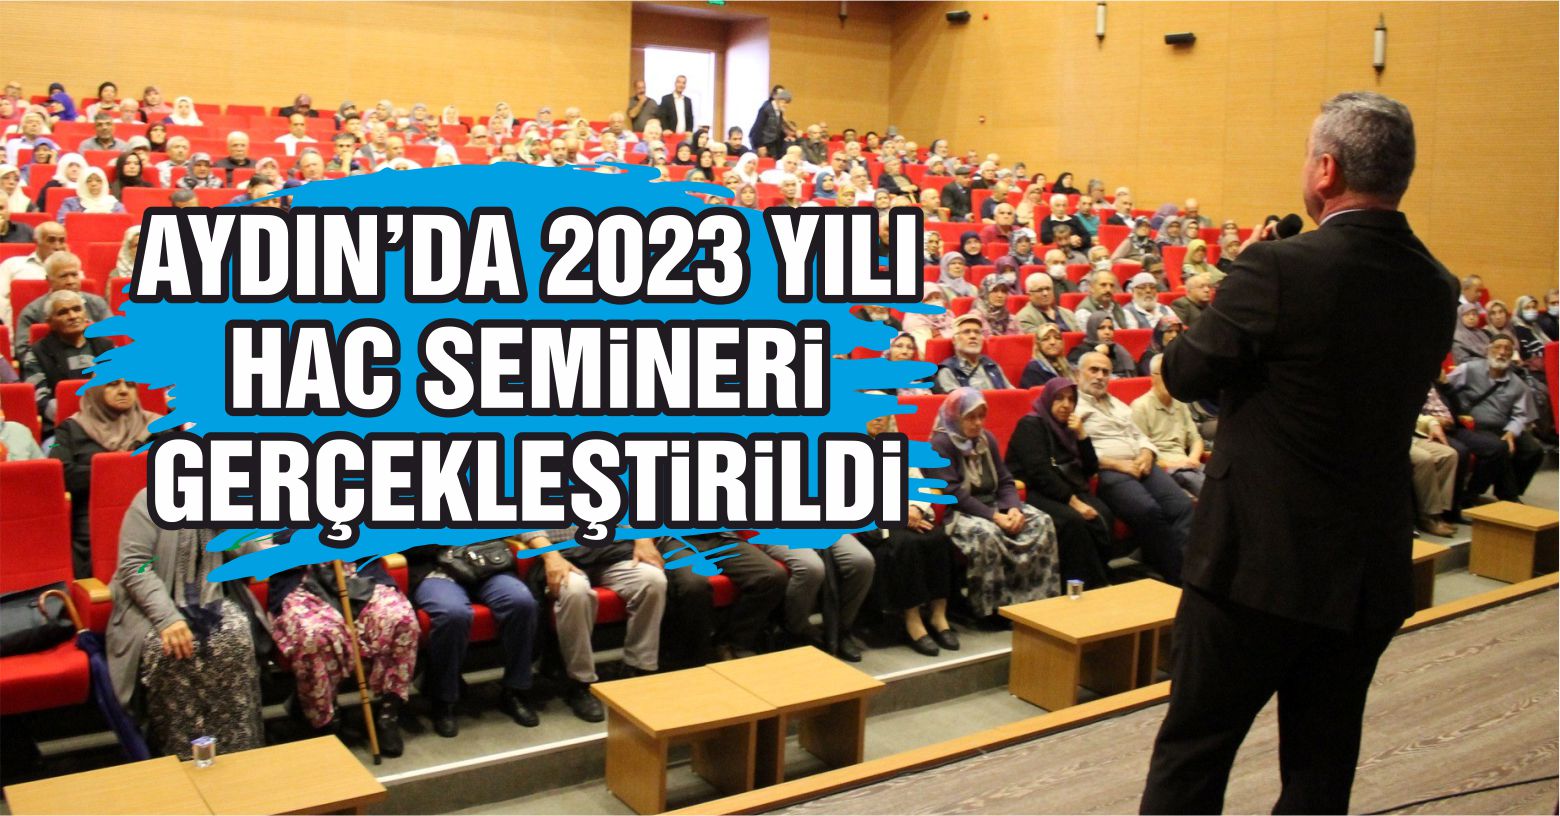 Aydın’da 2023 yılı hac semineri gerçekleştirildi